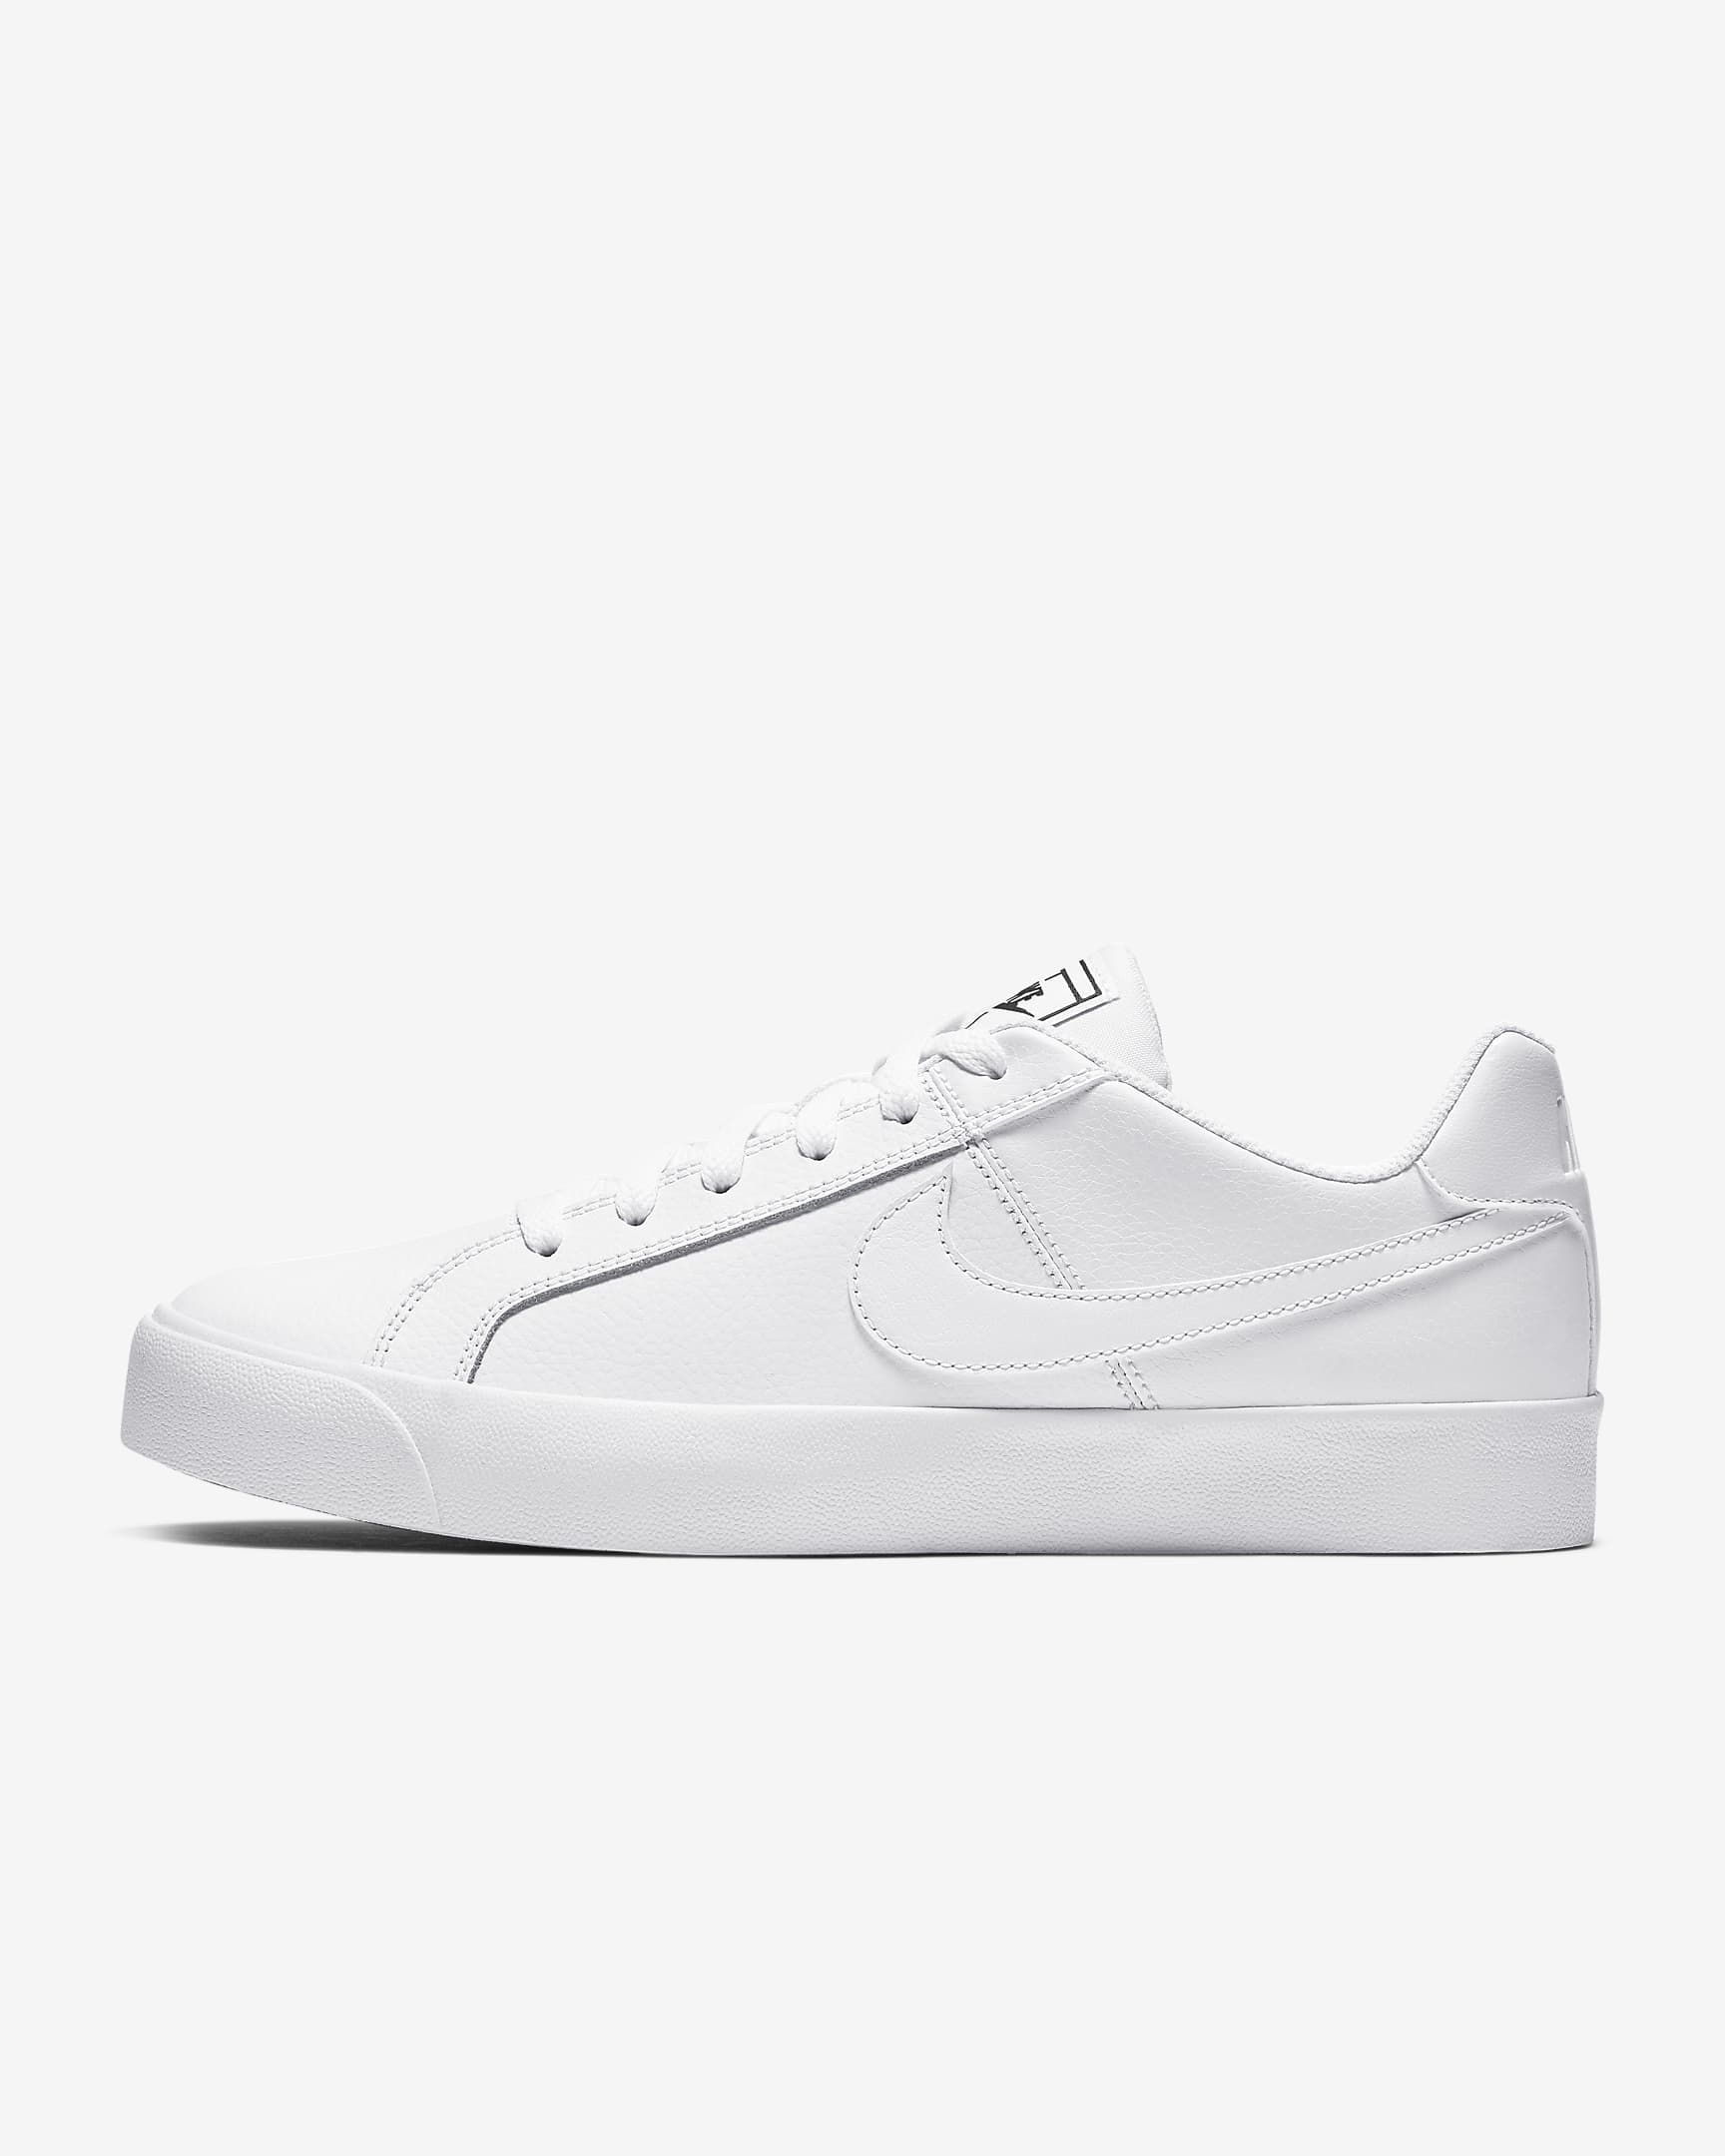 https://workonmondaytravels.com/wp-content/uploads/2021/08/White-Nike-Shoes.jpeg